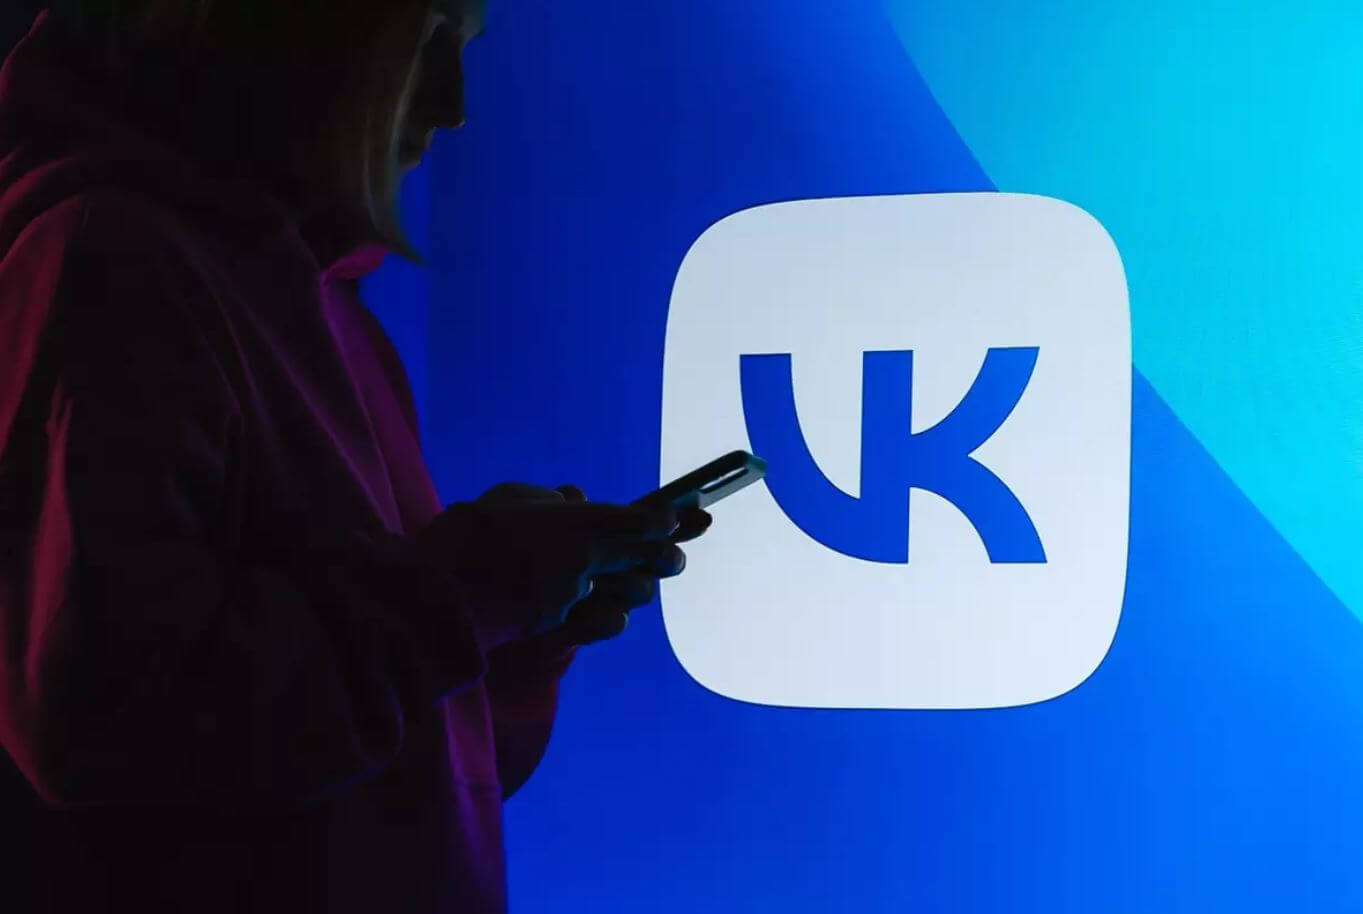 Приложение ВКонтакте для iPhone обновилось по-крупному и получило поддержку функций из iOS 16. Рассказываем о классных фишках приложения ВКонтакте, которыми можно пользоваться, в том числе, благодаря iOS 16. Фото.